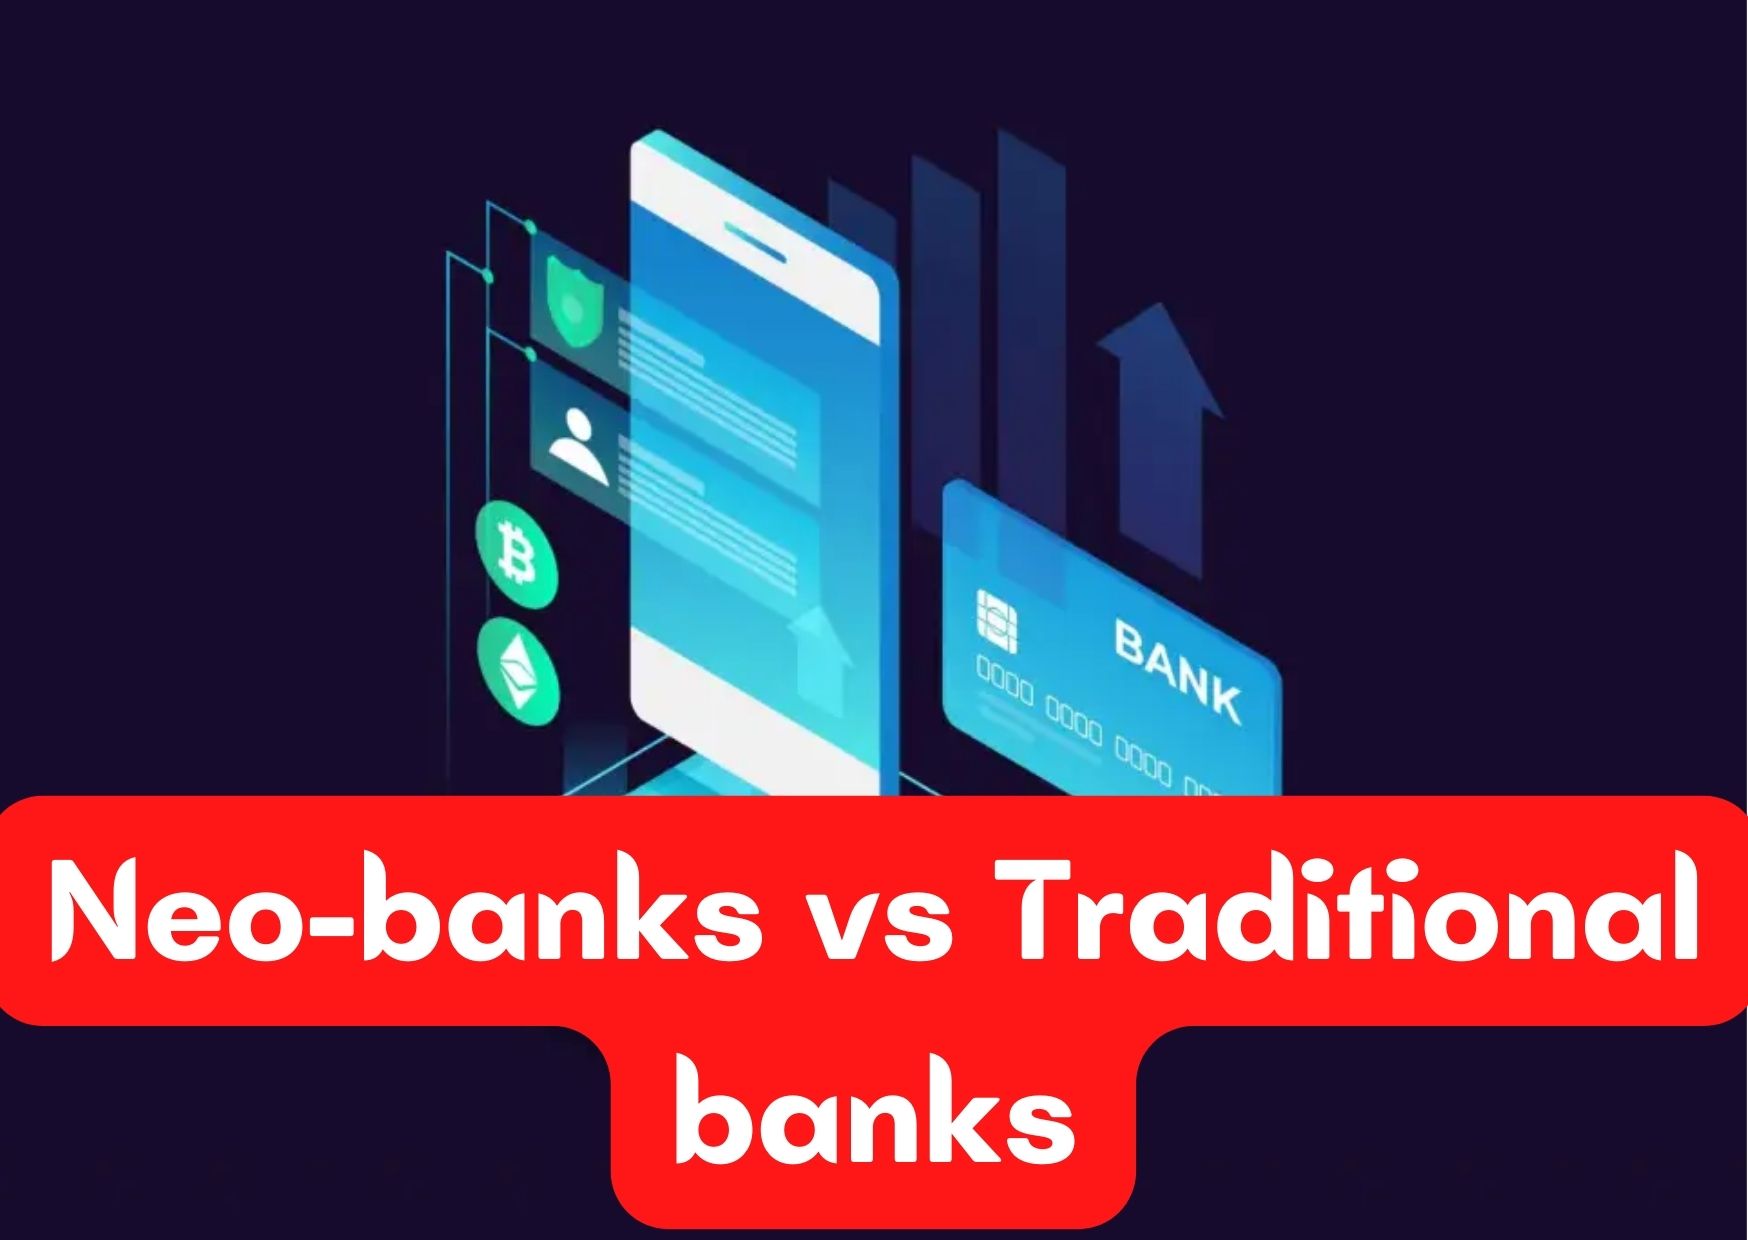 Neo-banks vs Traditional banks